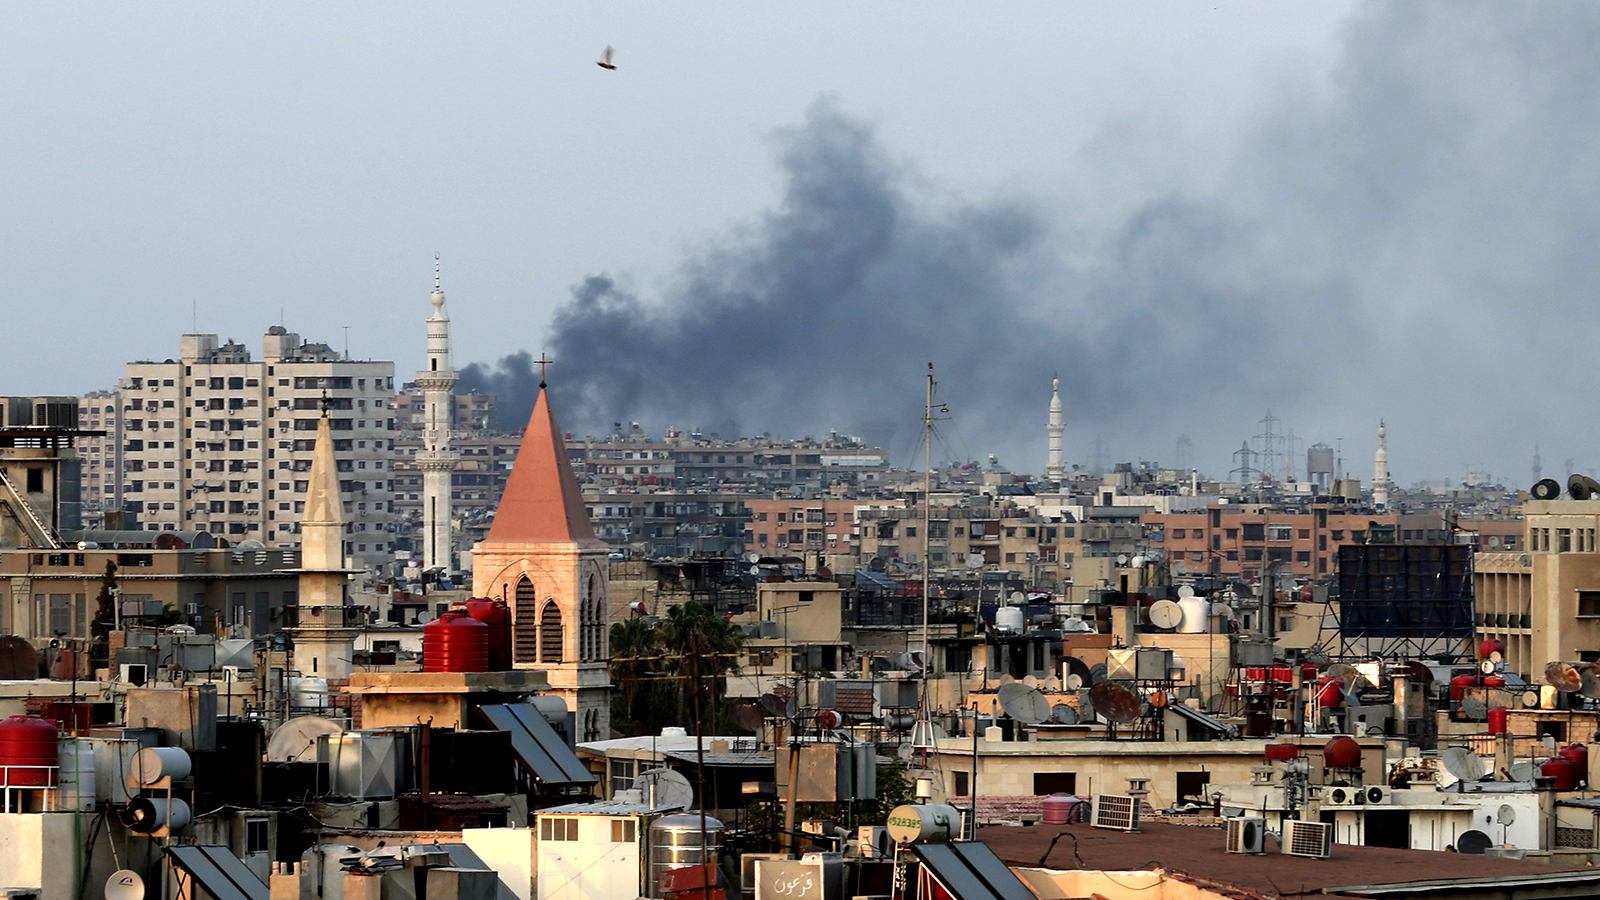 دخان يتصاعد من انفجارات ثقيلة في حي جوبر غرب دمشق في سوريا، آب/ أغسطس 2013. (تصوير: وكالة AP)